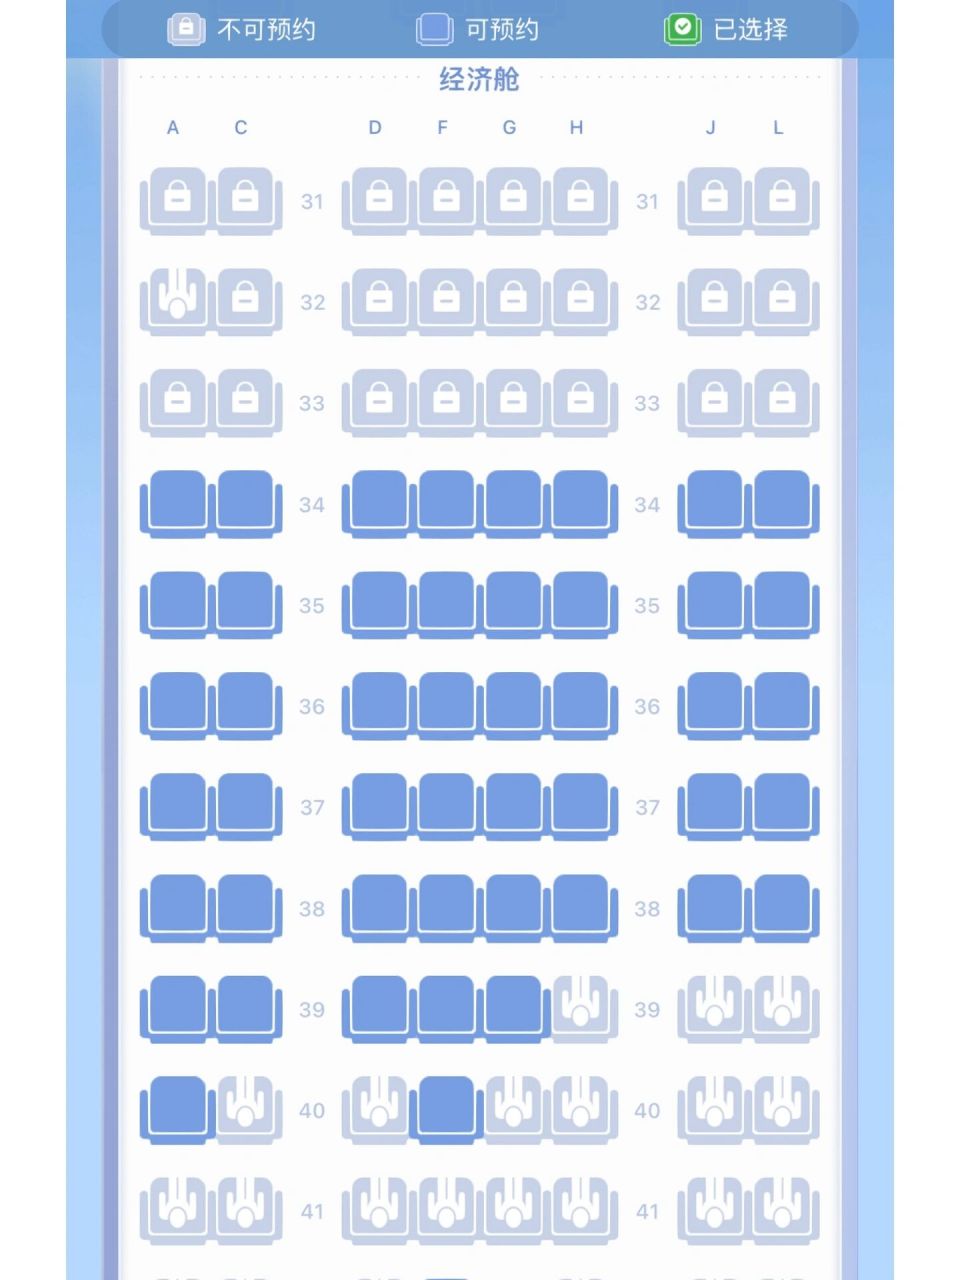 东航319机型座位图机翼图片